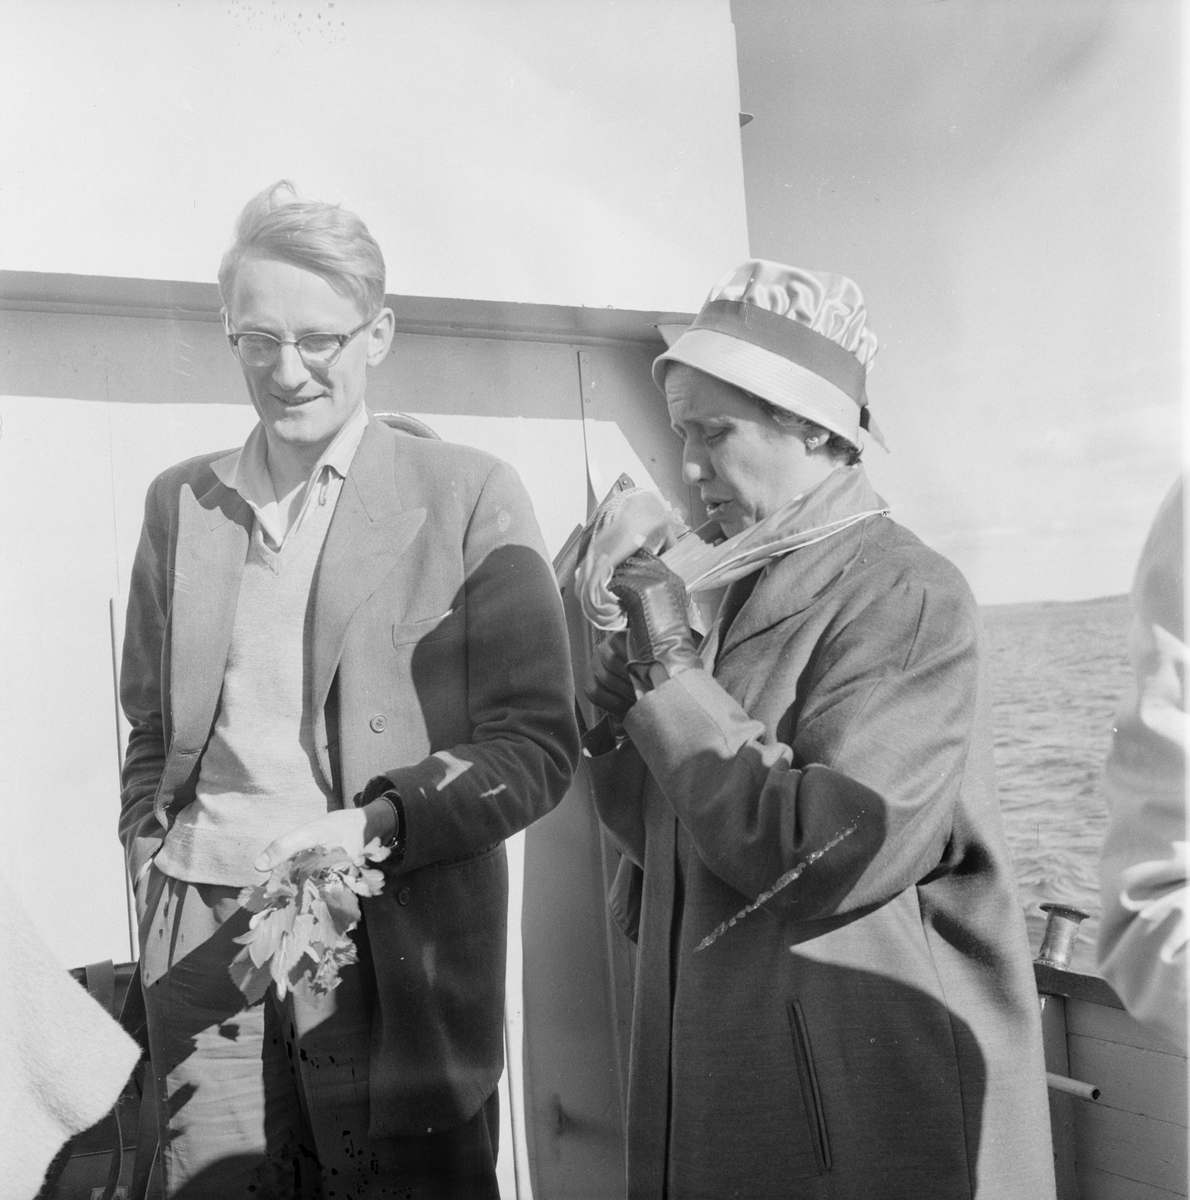 Man och kvinna på båt, Uppland 1959